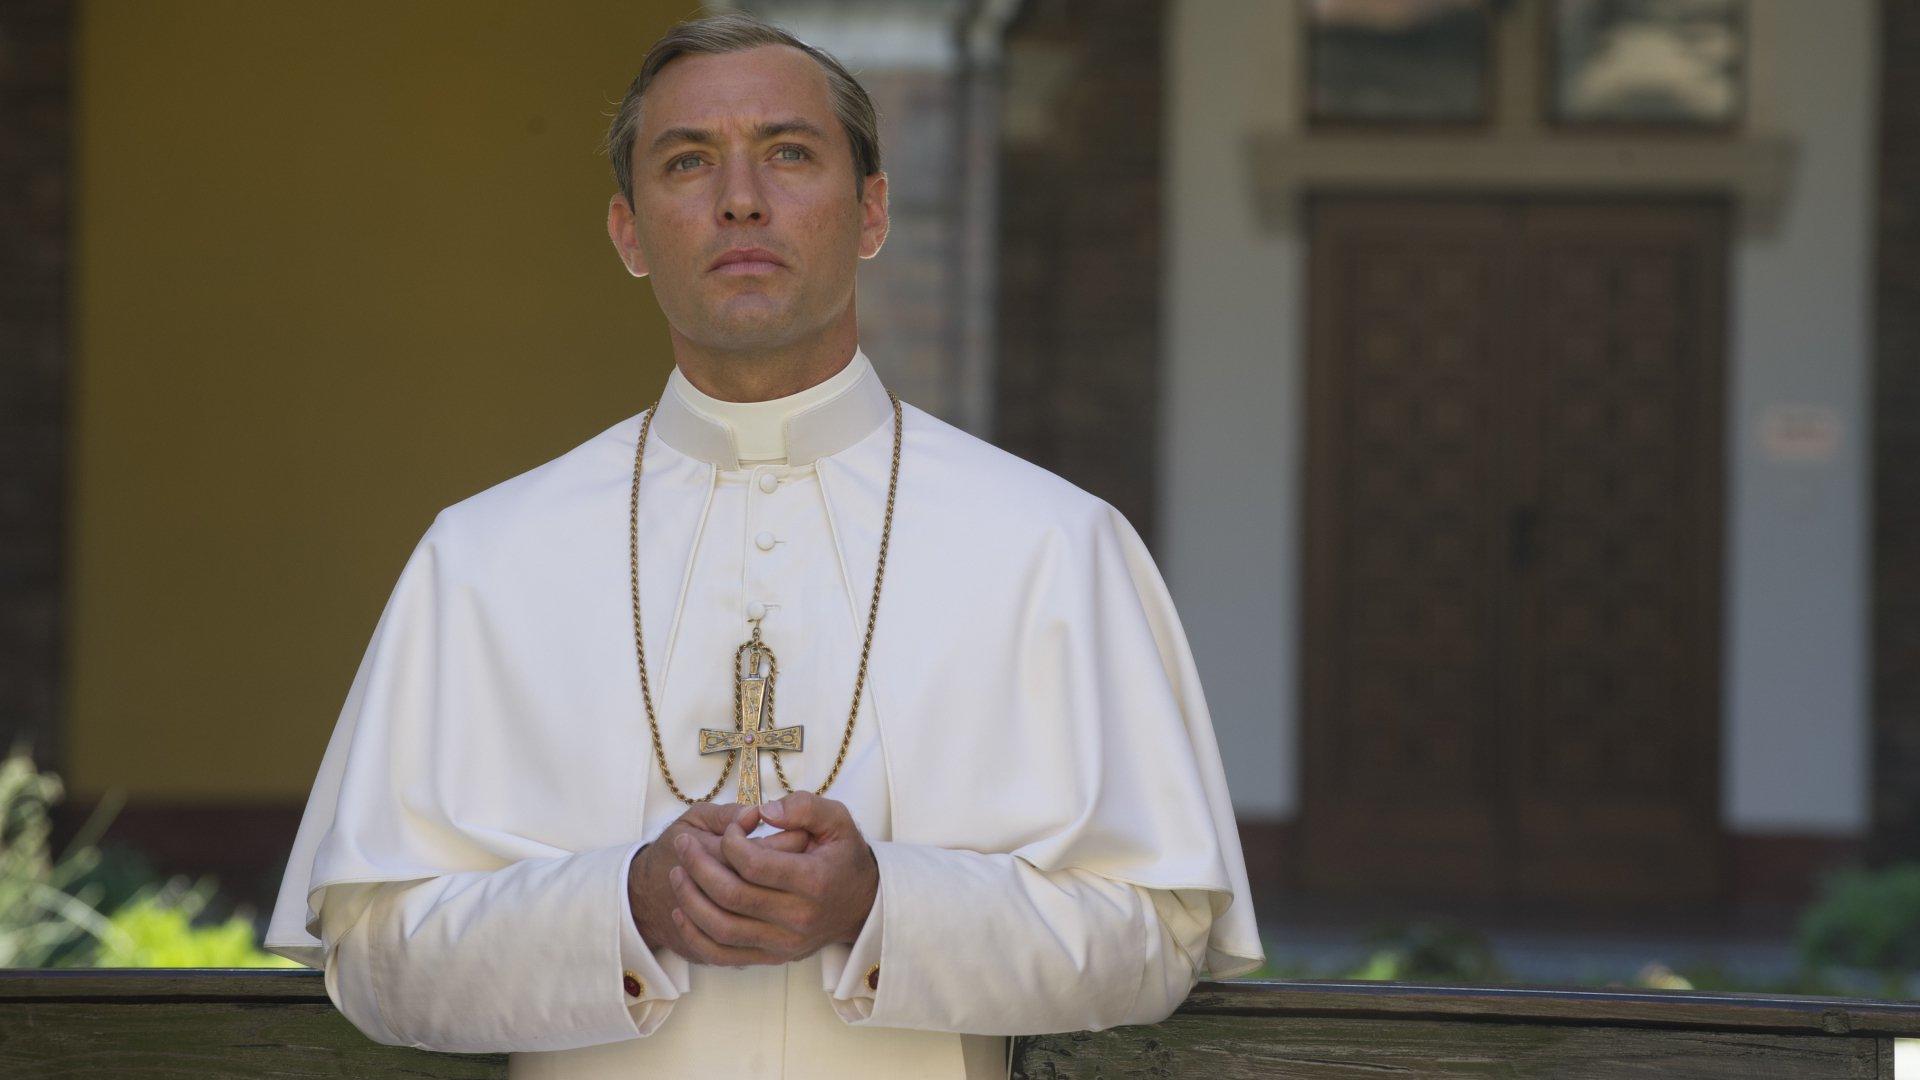 achterlijk persoon Dijk Herhaal The Young Pope (S01E05): Series 1, Episode 5 Summary - Season 1 Episode 5  Guide